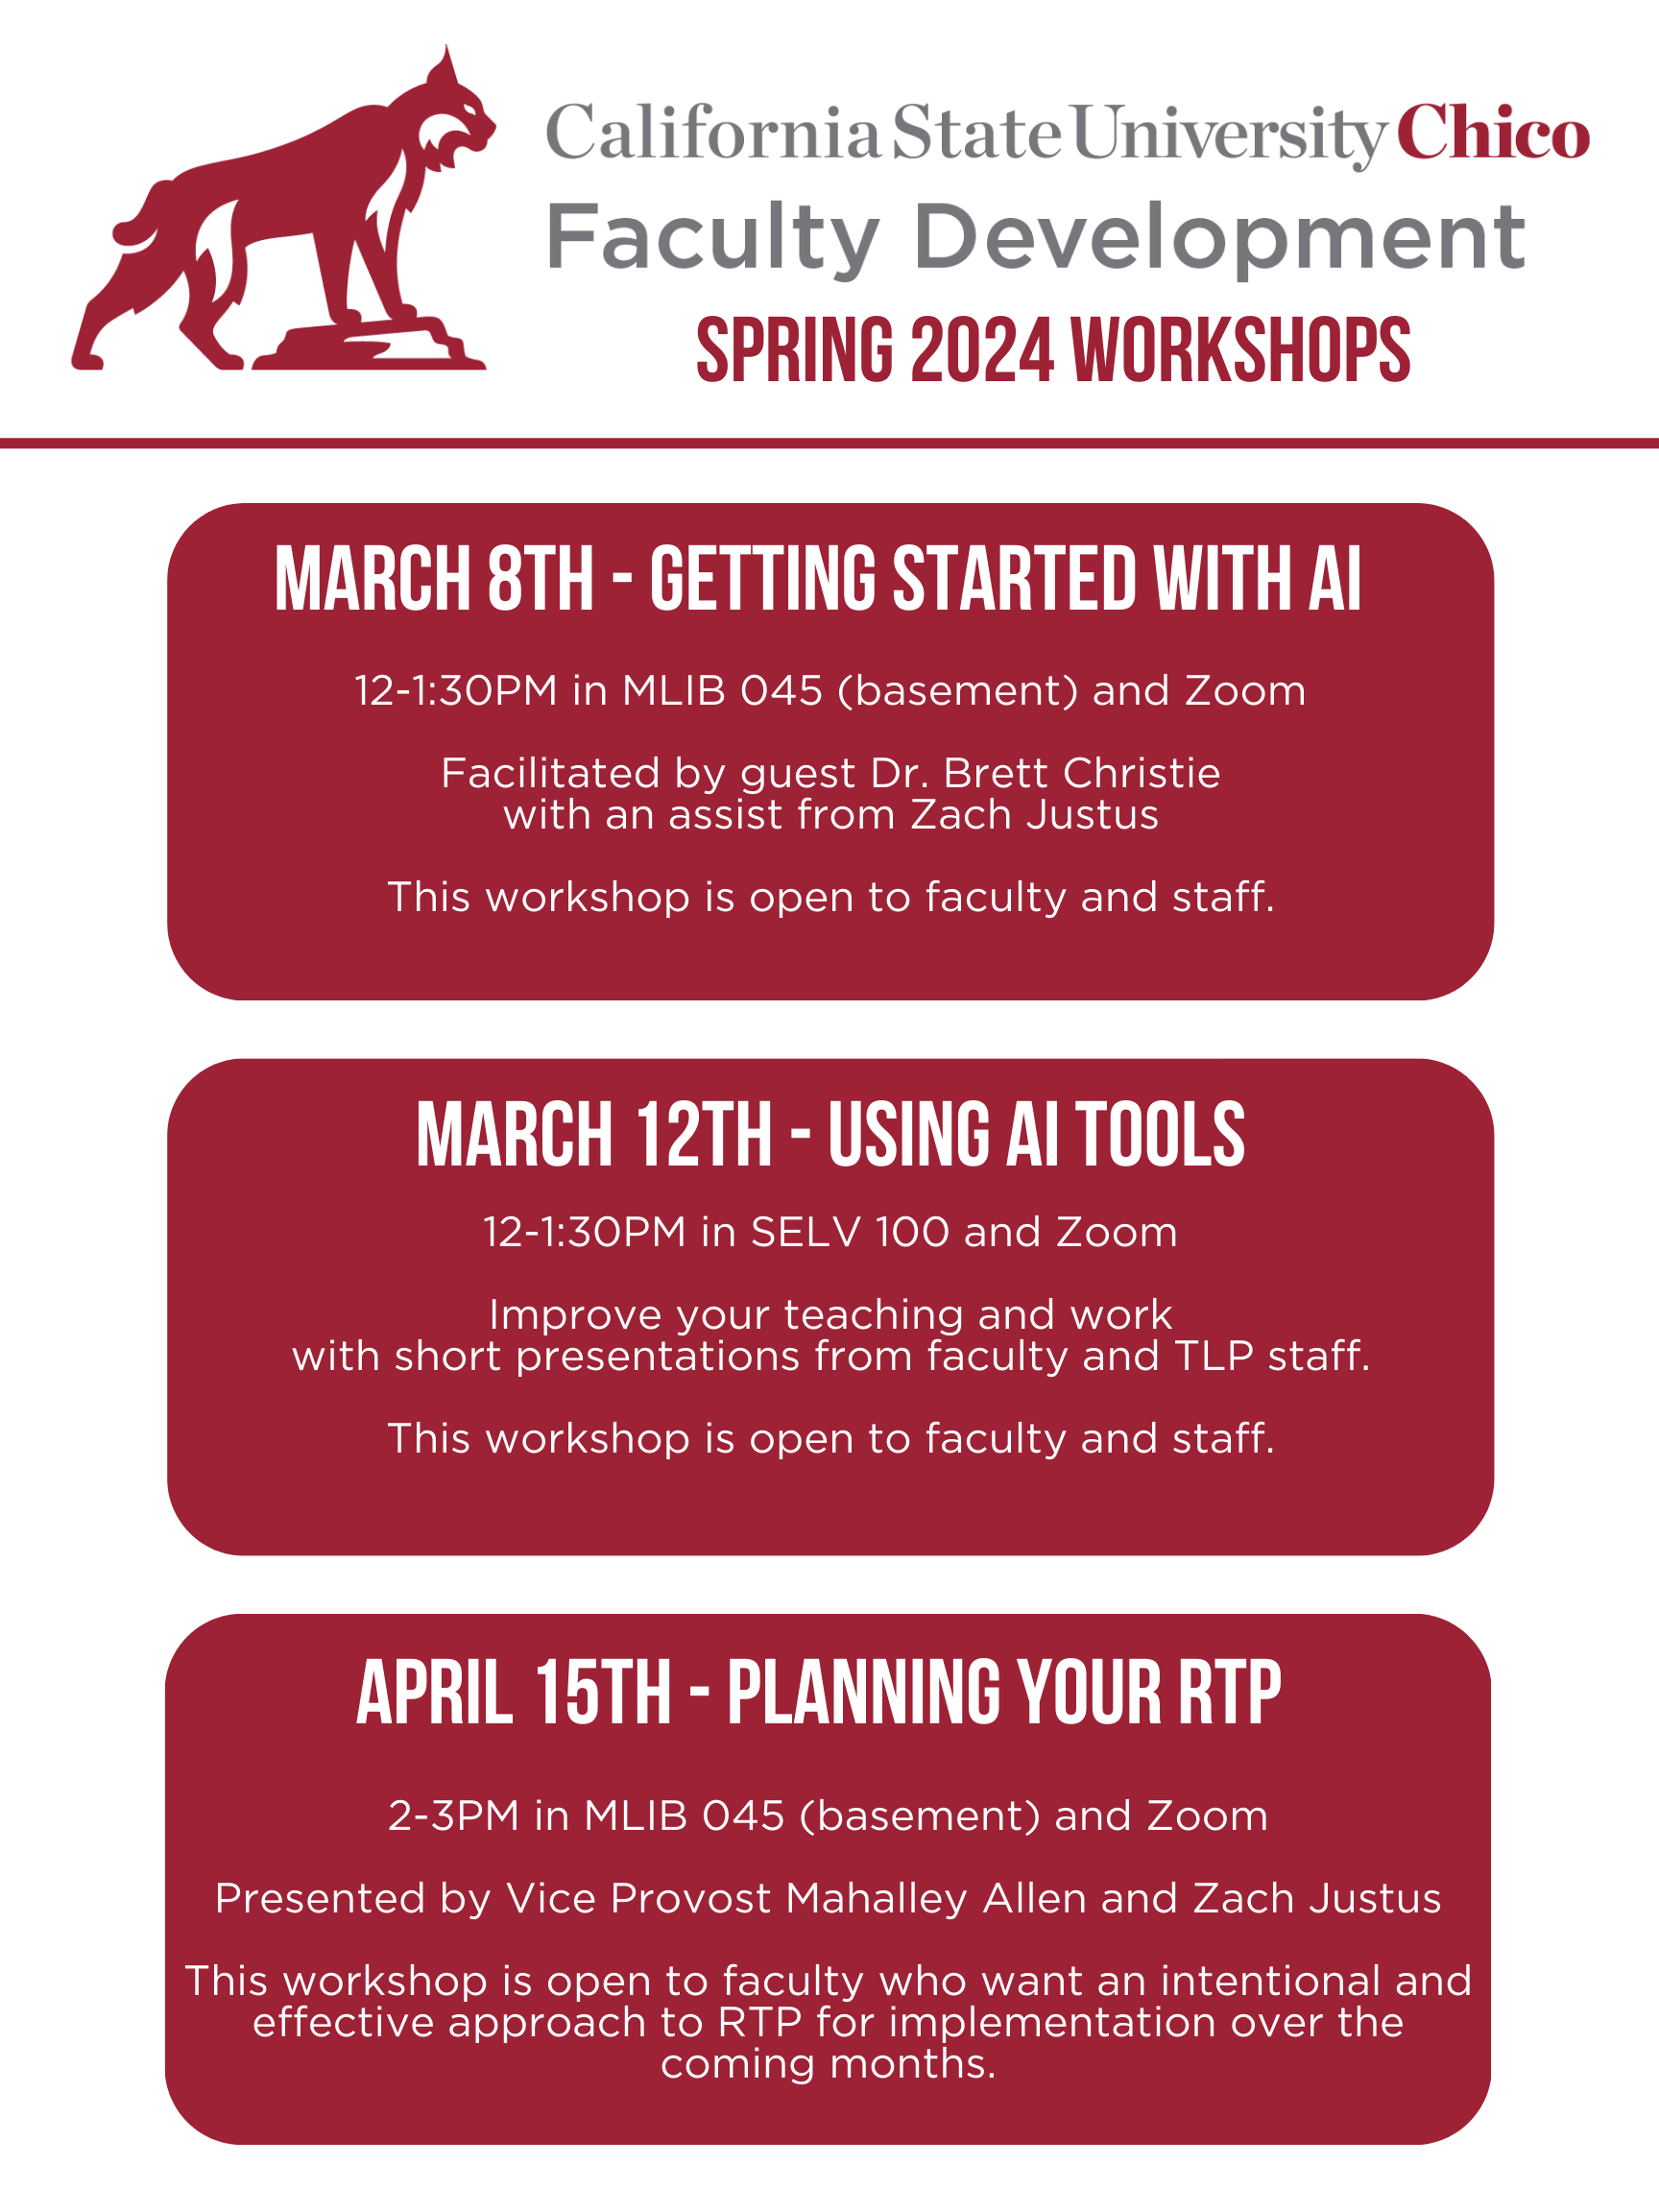 Spring 2024 FDEV Workshop Information